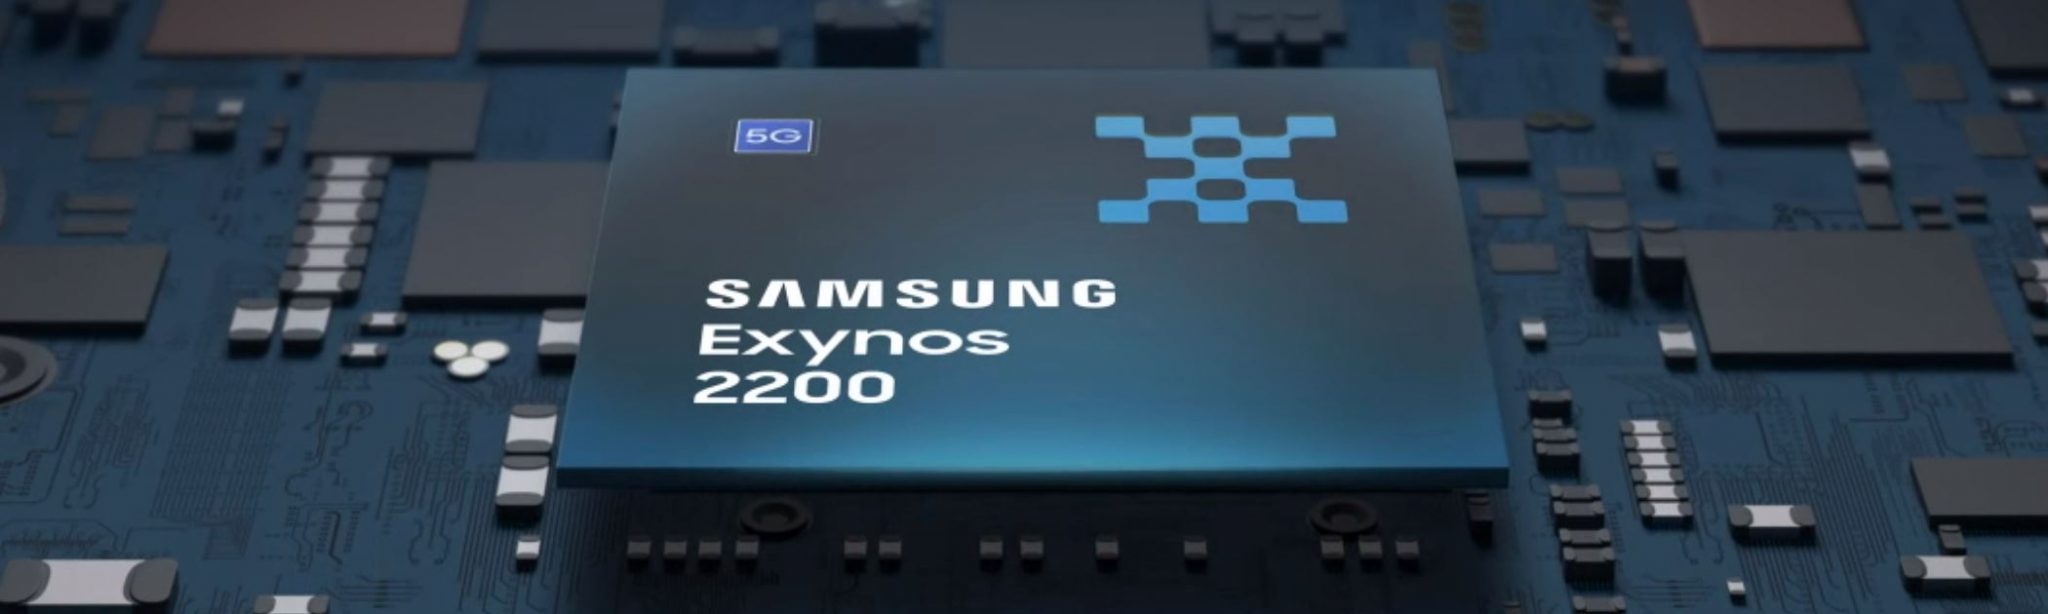 Samsung-Exynos-2200-1-e1642480671650-2048x614.jpg